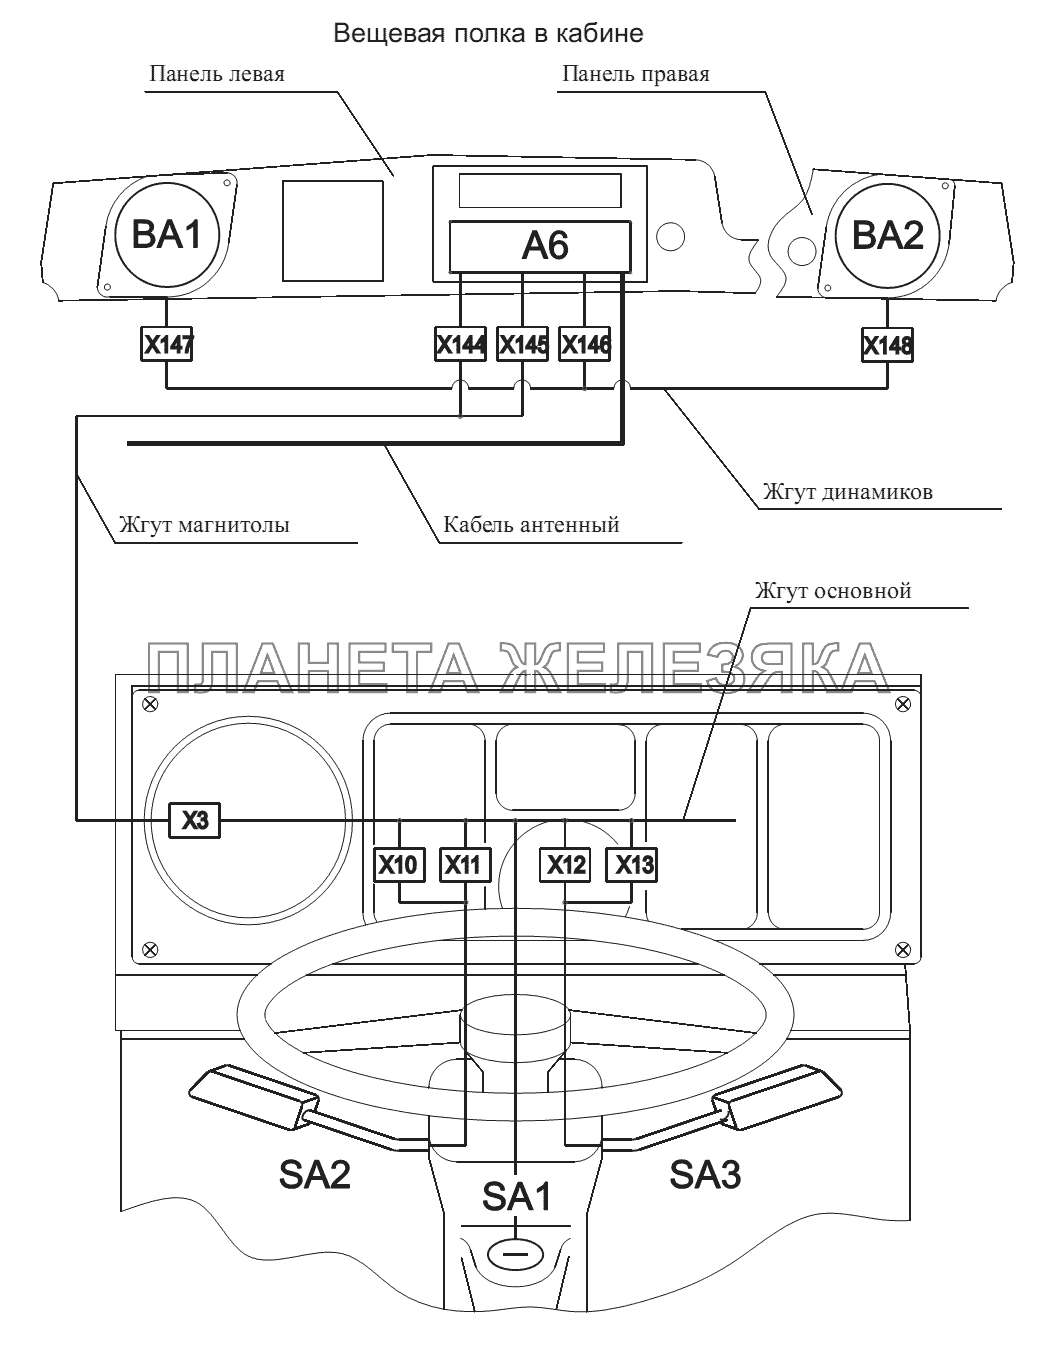 Расположение разъемов и элементов электрооборудования на рулевой колонке и вещевой полке МАЗ-555102, 5551А2